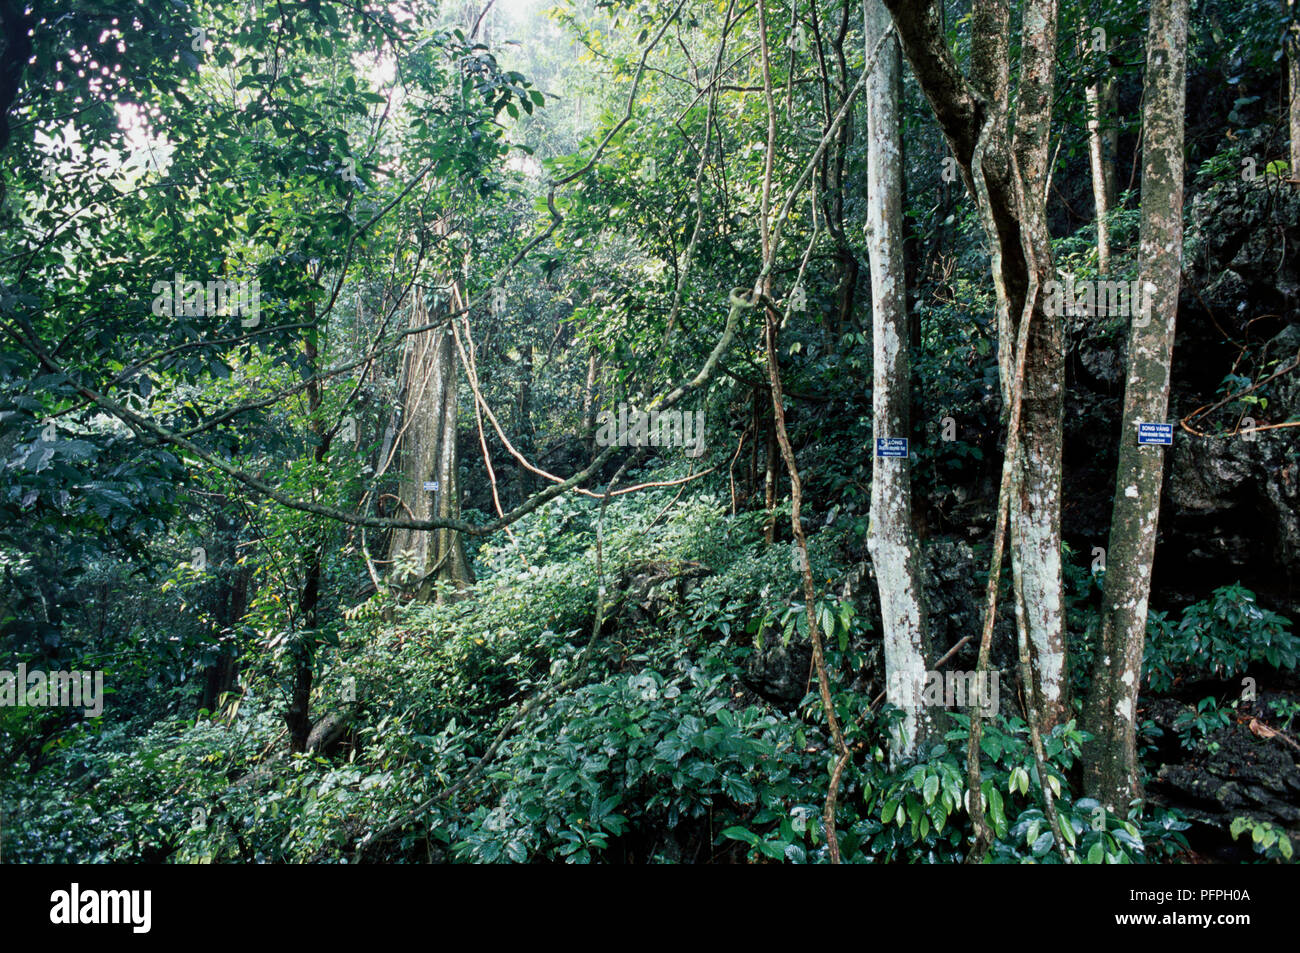 Vietnam, Cuc Phuong National Park, Liana vignes suspendues à des arbres en forêt dense Banque D'Images